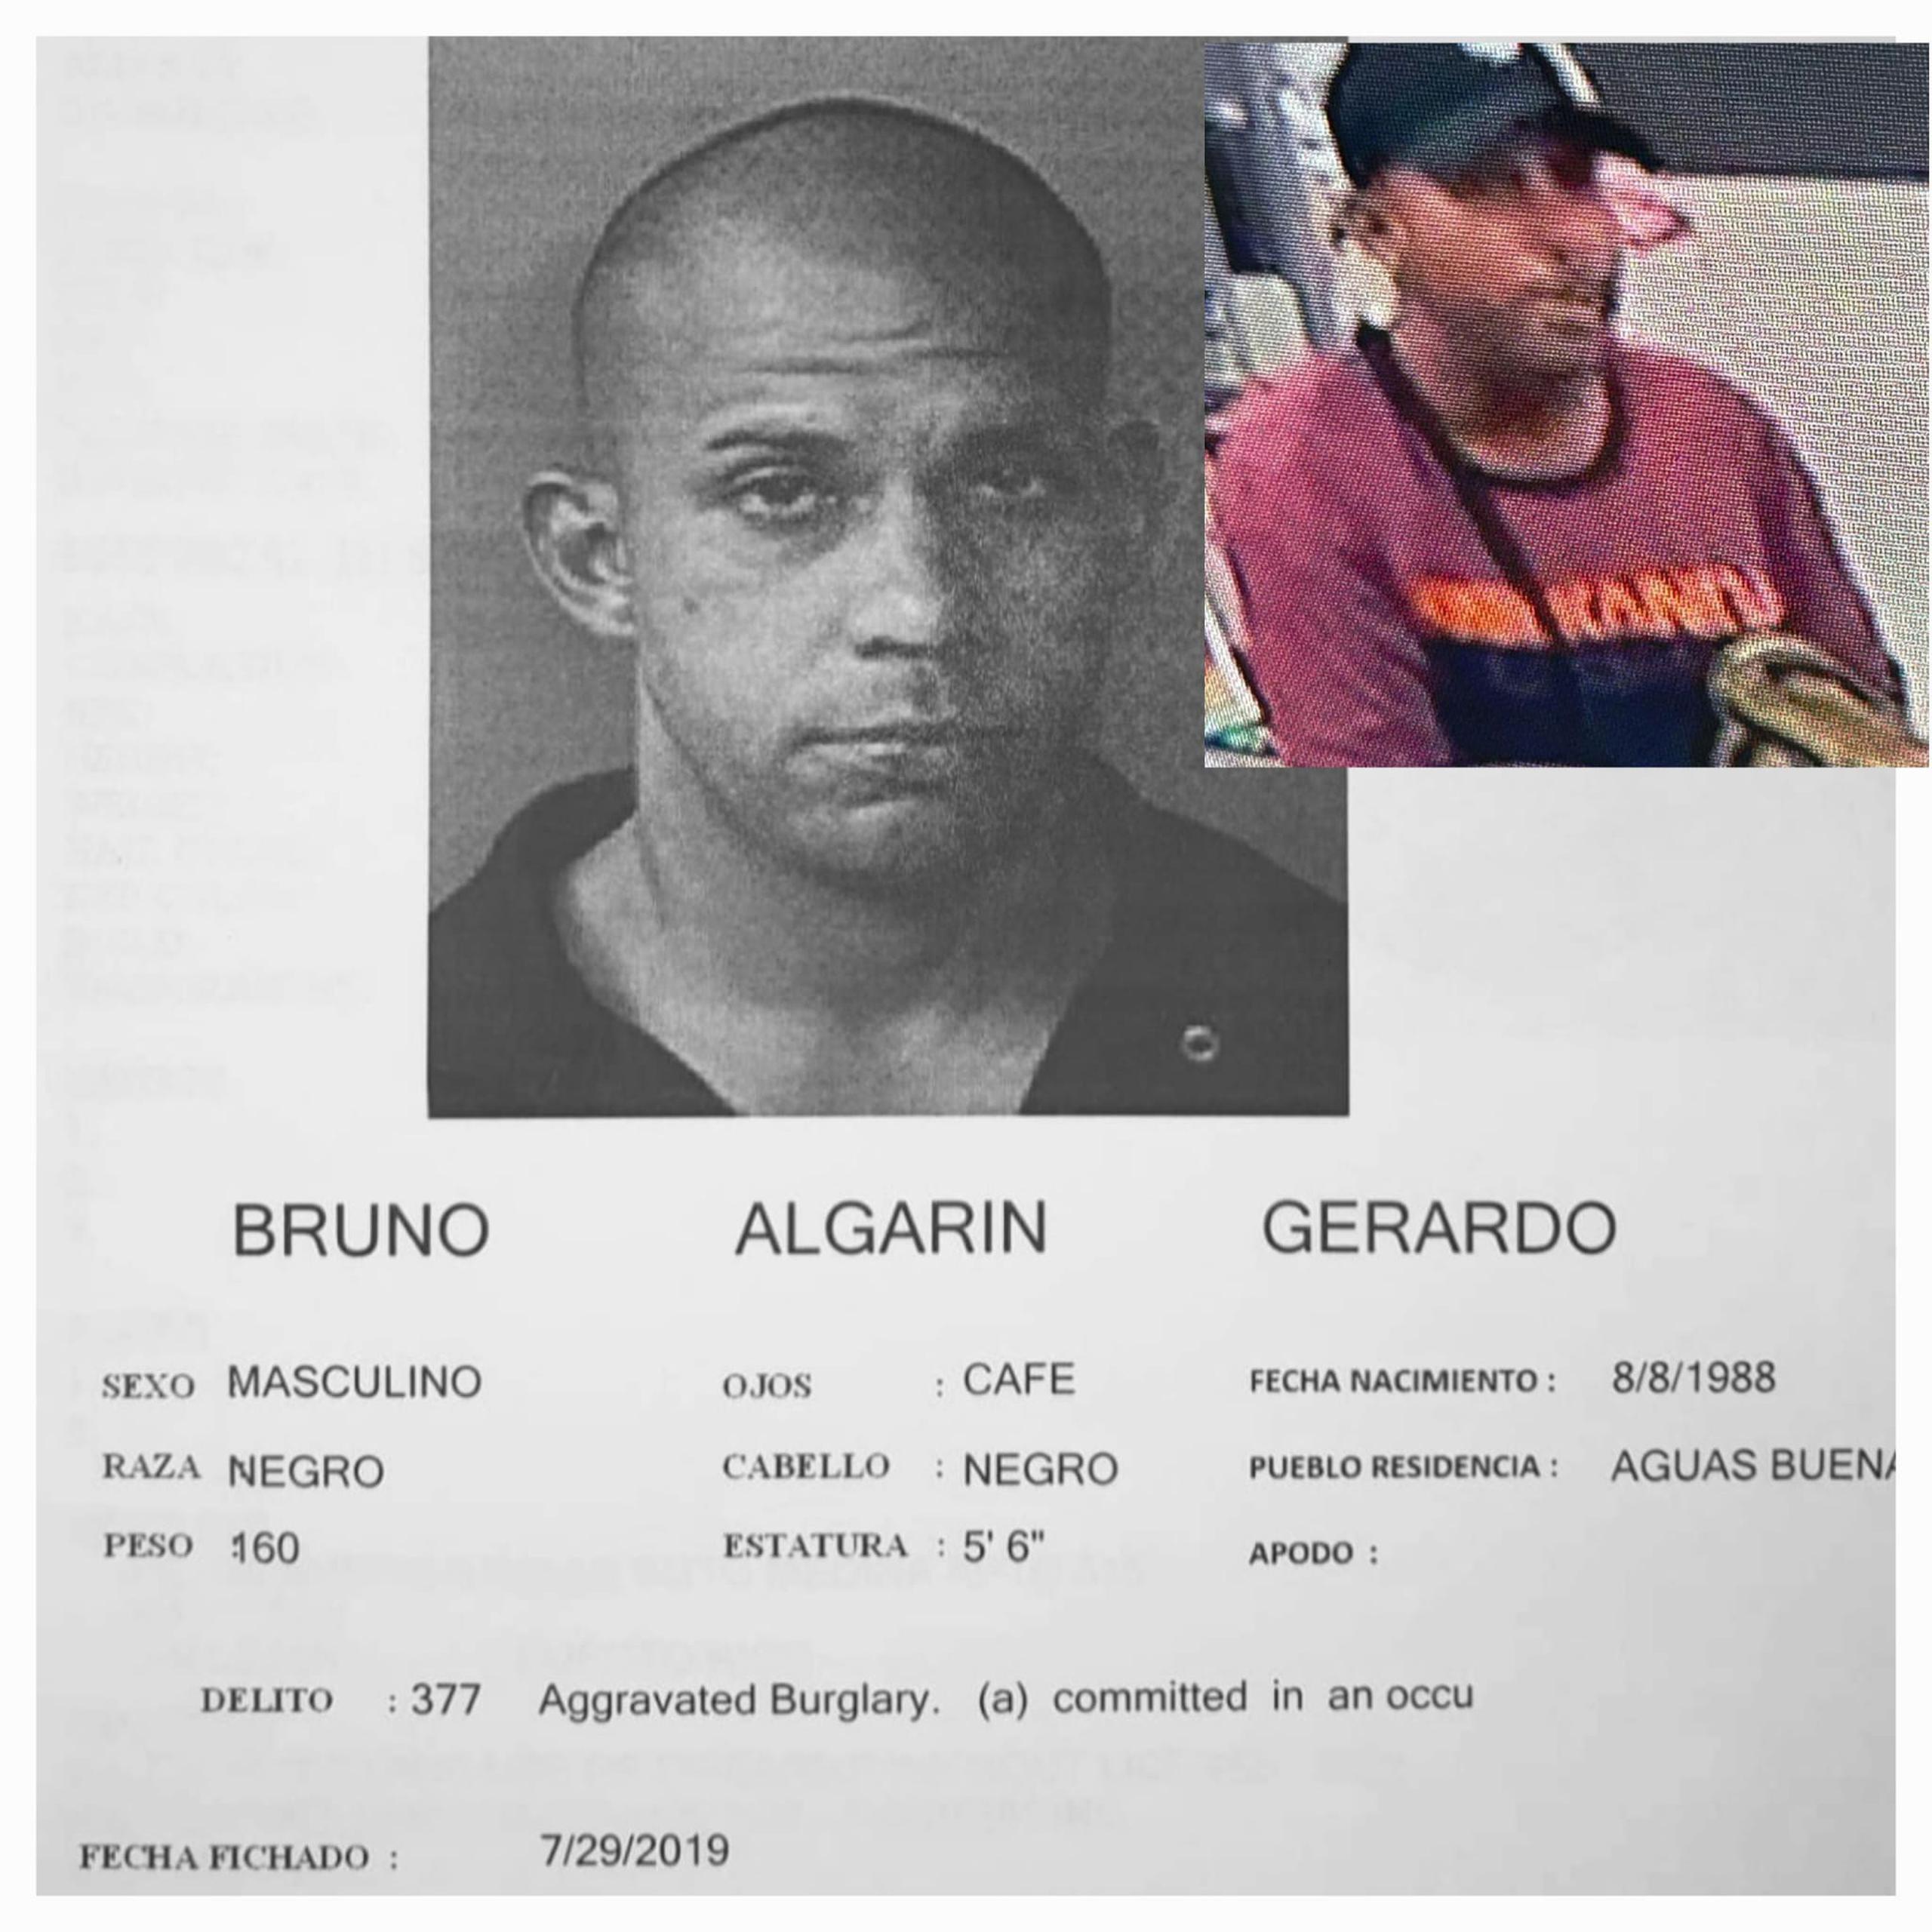 De tener información que pueda conducir al arresto de Gerardo Bruno Algarín, puede llamar a la línea confidencial del Negociado de la Policía al (787) 343-2020.